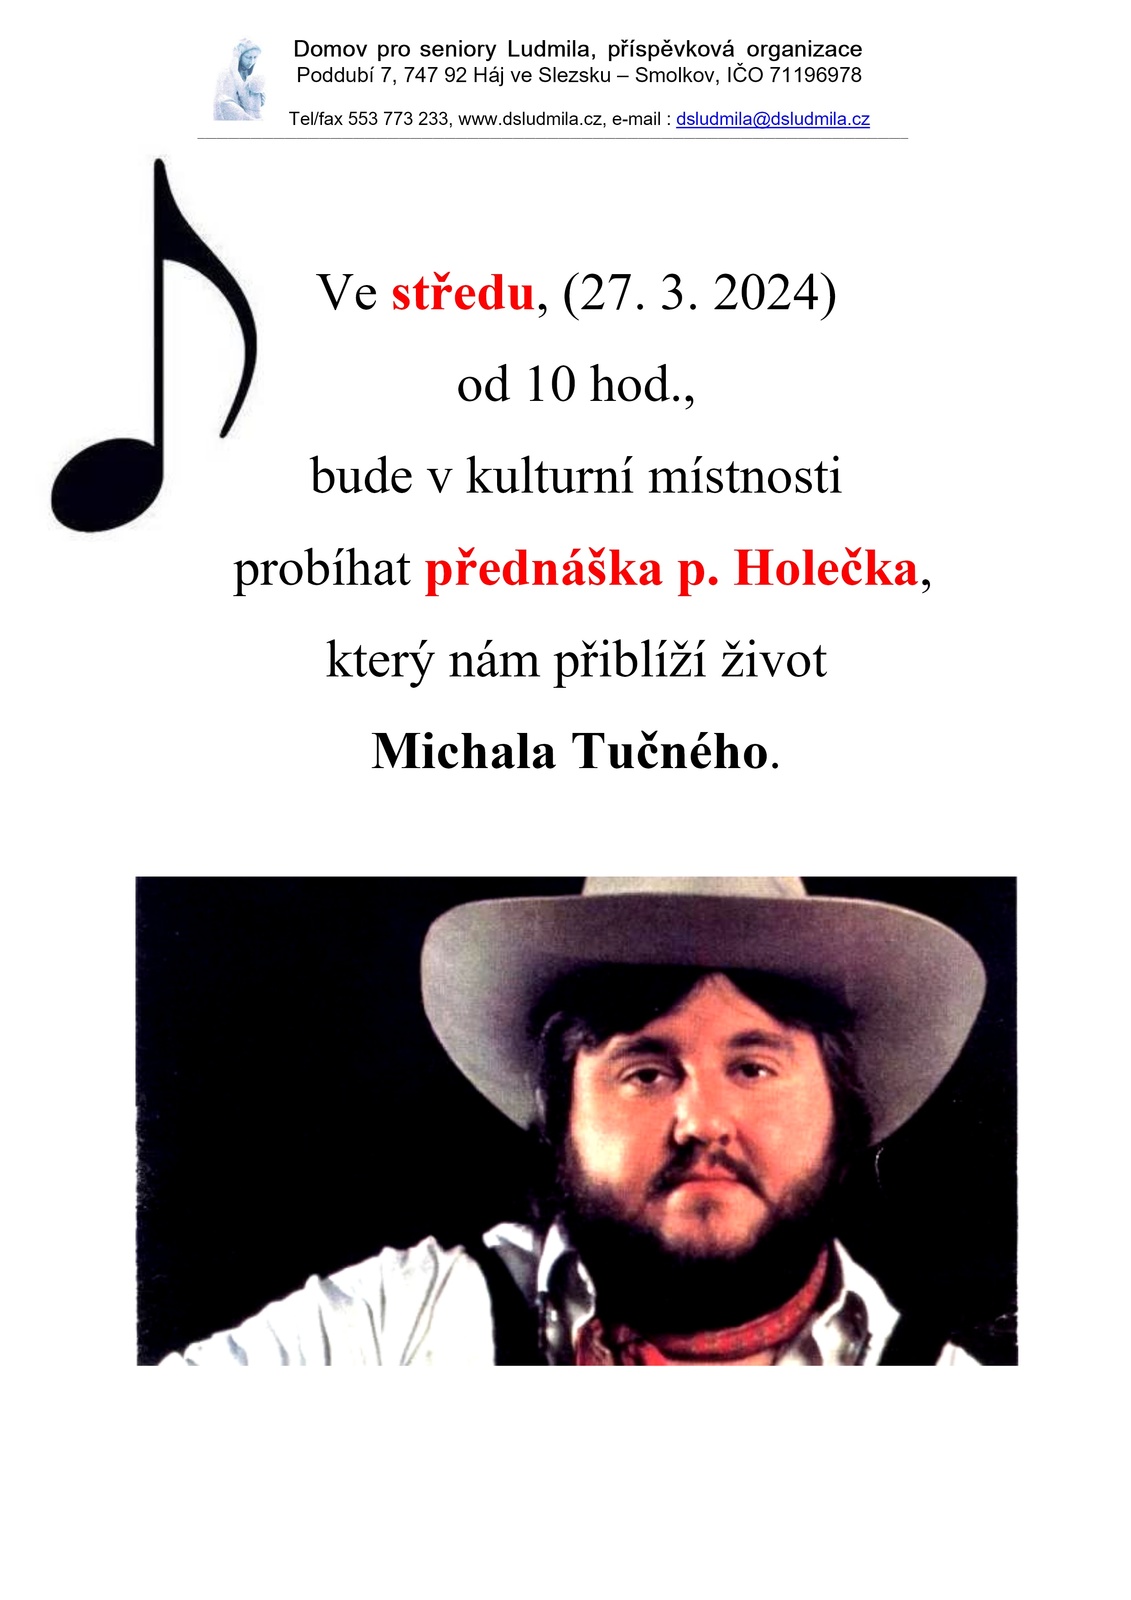 p. holeček 2024 - Michal Tučný.jpg